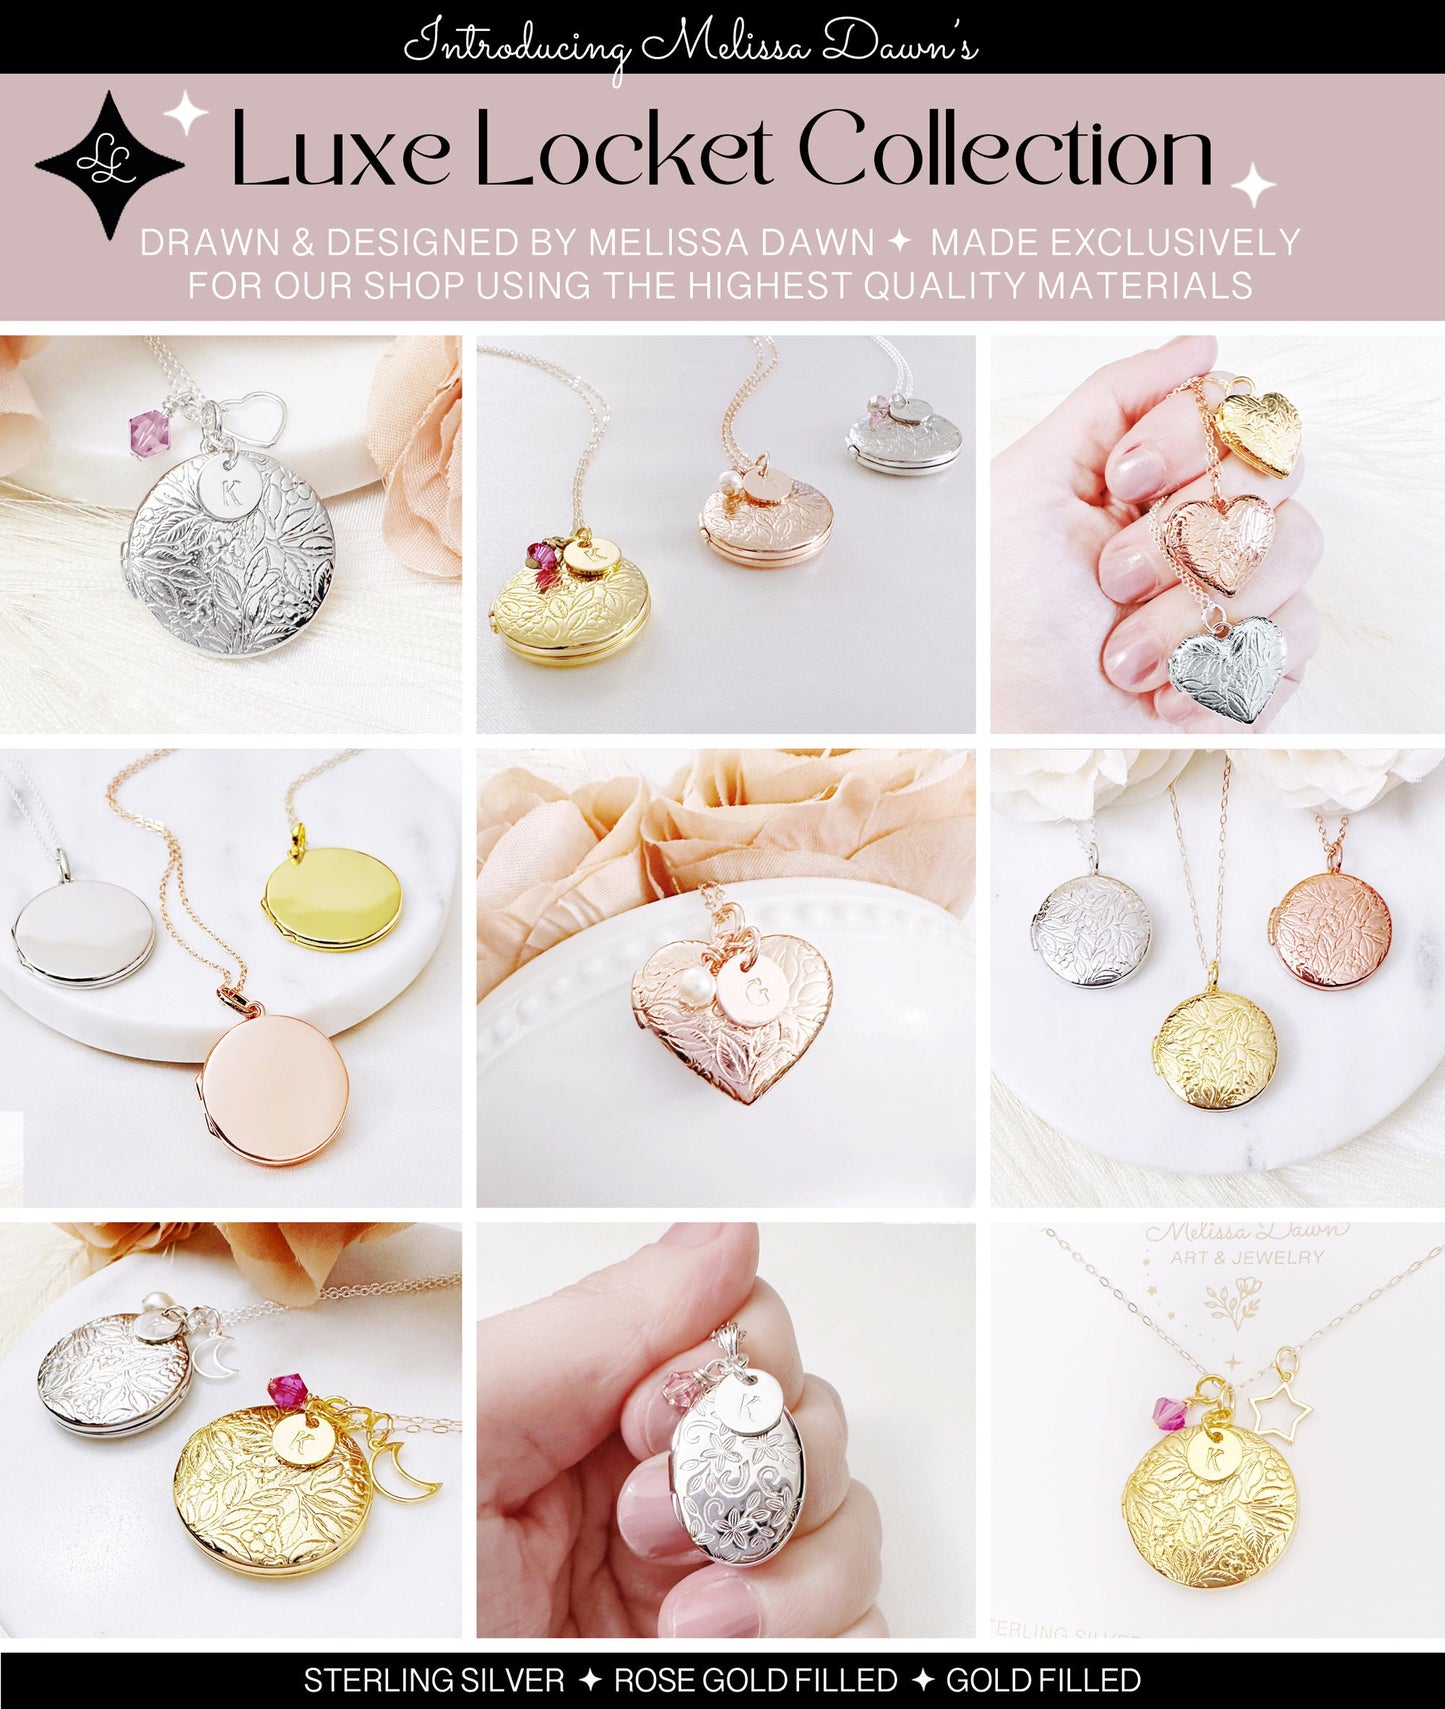 Oval Locket / Small Locket / Sterling Silver Locket / Flower Locket / Locket Necklace / Memorial Locket Necklace / Photo Locket / Locket